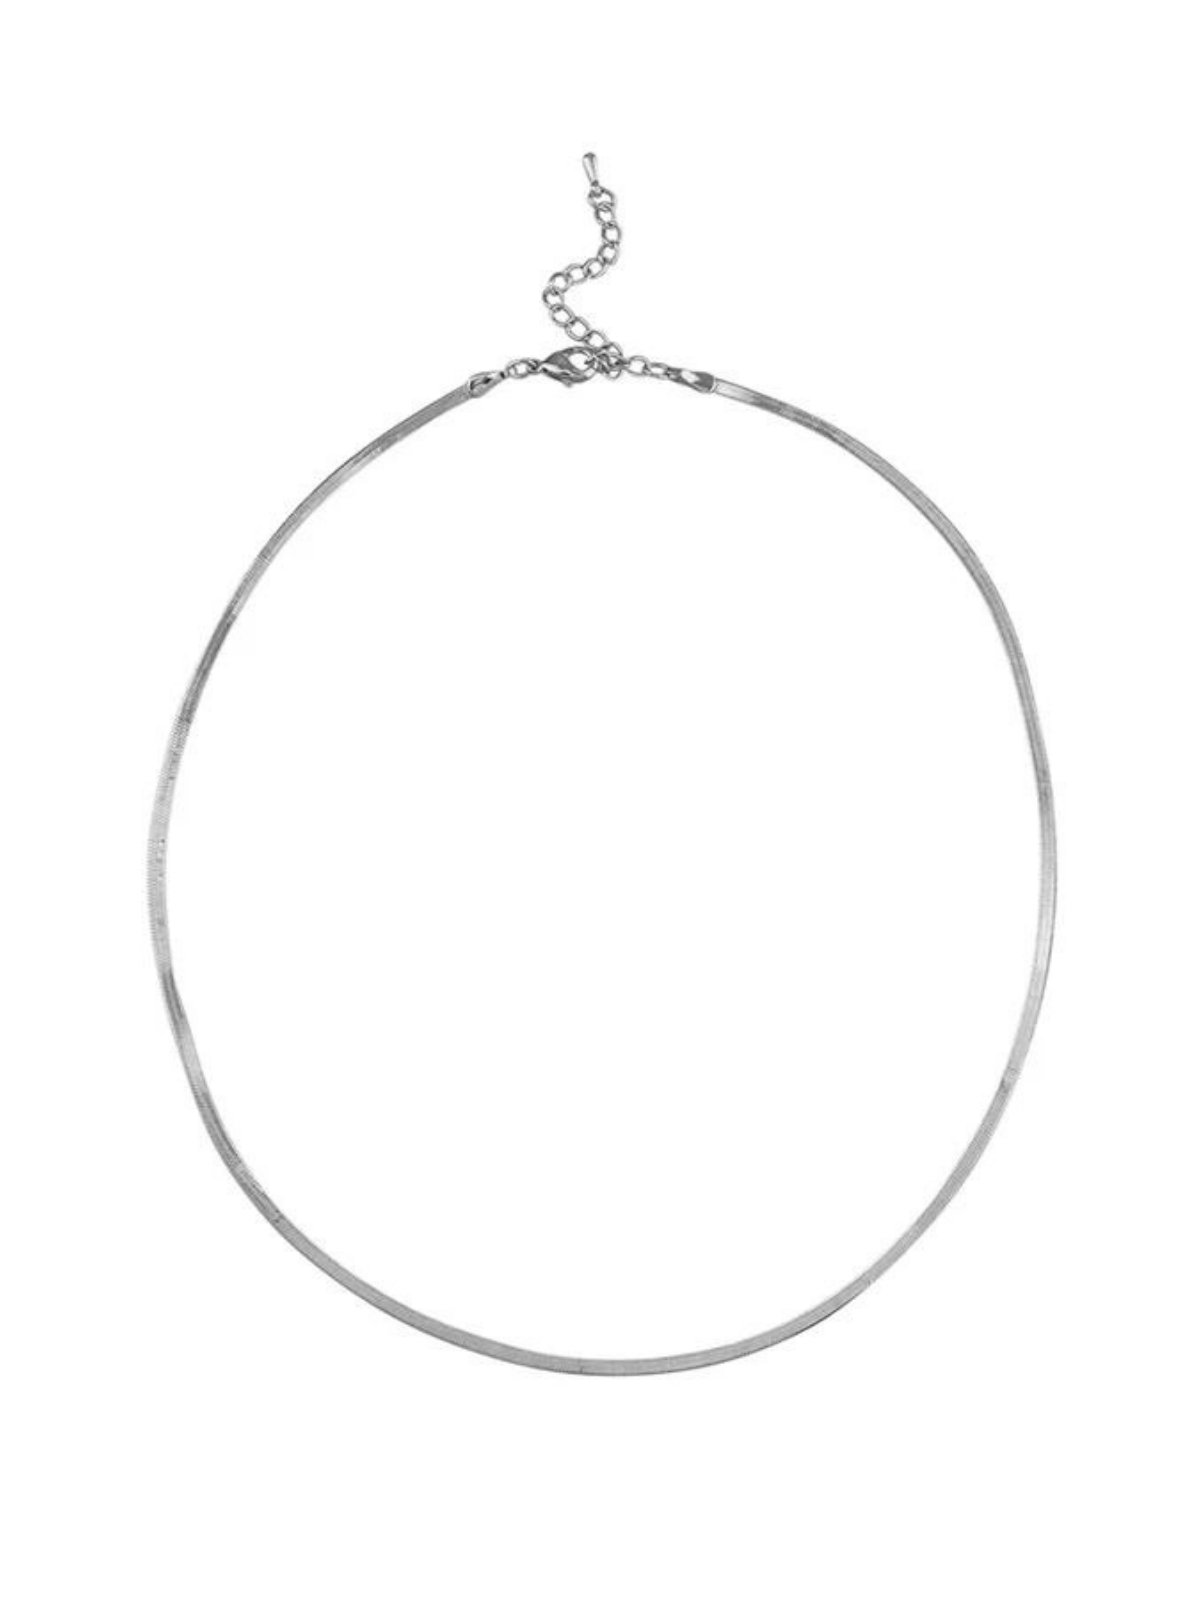 Jolie & Deen | Snake Chain Necklace - Silver | Perlu